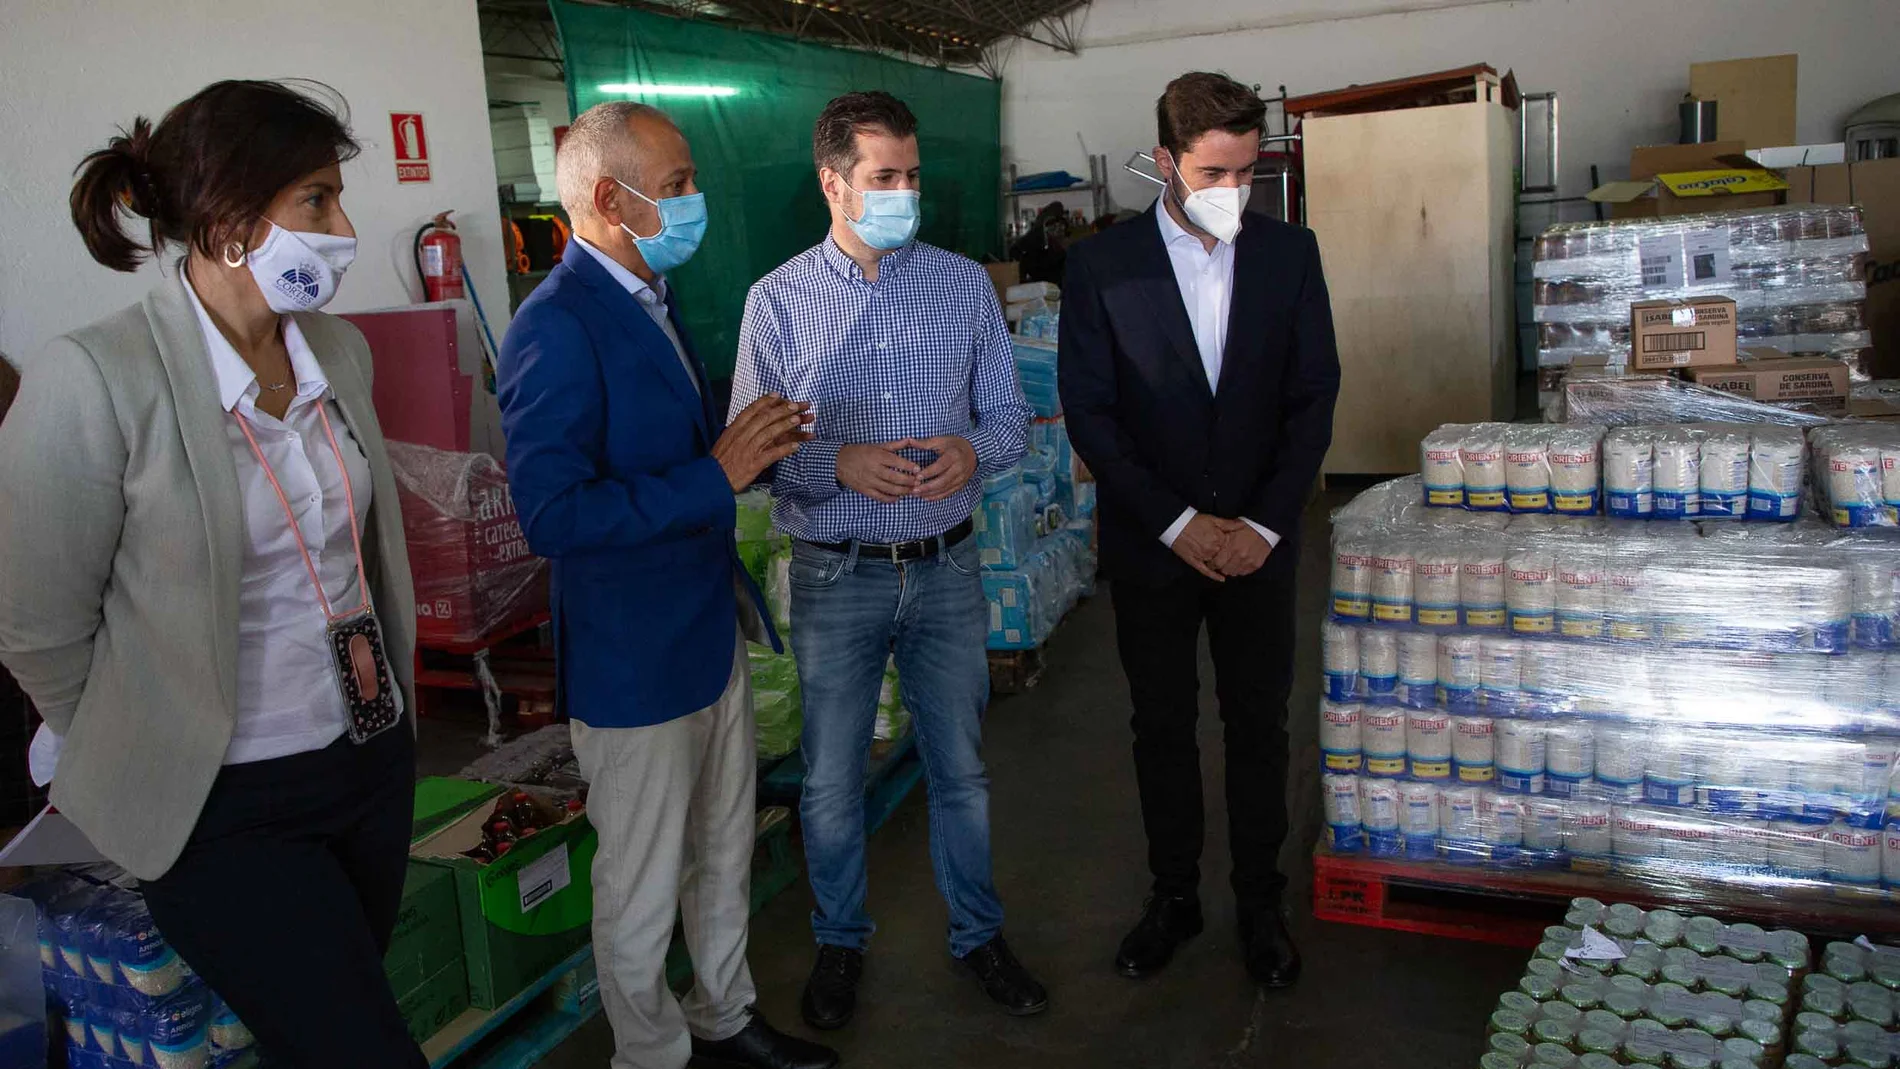 El secretario general del PSCyL, Luis Tudanca, visita la sede de Cruz Roja Española en Zamora para conocer las instalaciones y el trabajo realizado por la organización solidaria durante la pandemia